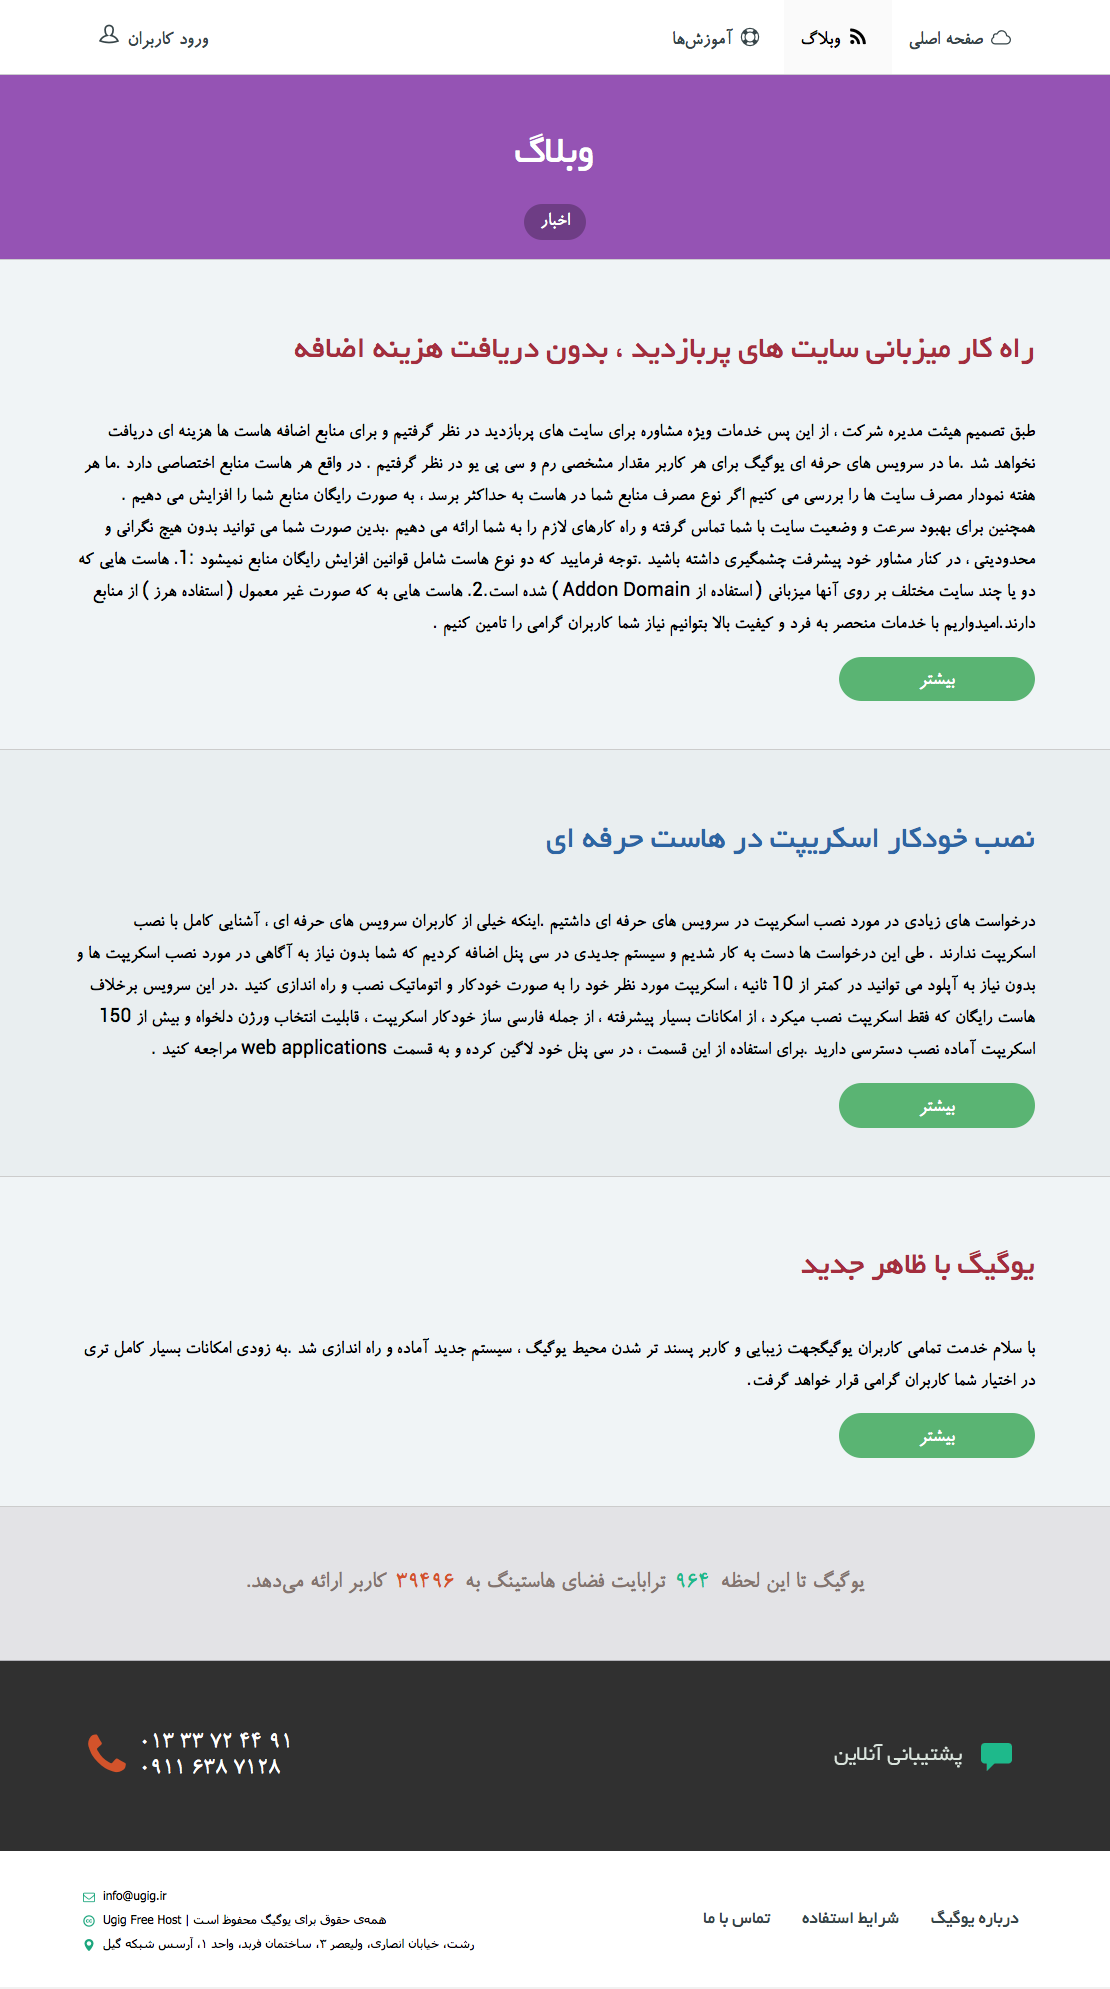 hosting Responsive orange green White host server long shadow flat wordpress pouya saadeghi ugig pasargad graphic Iran